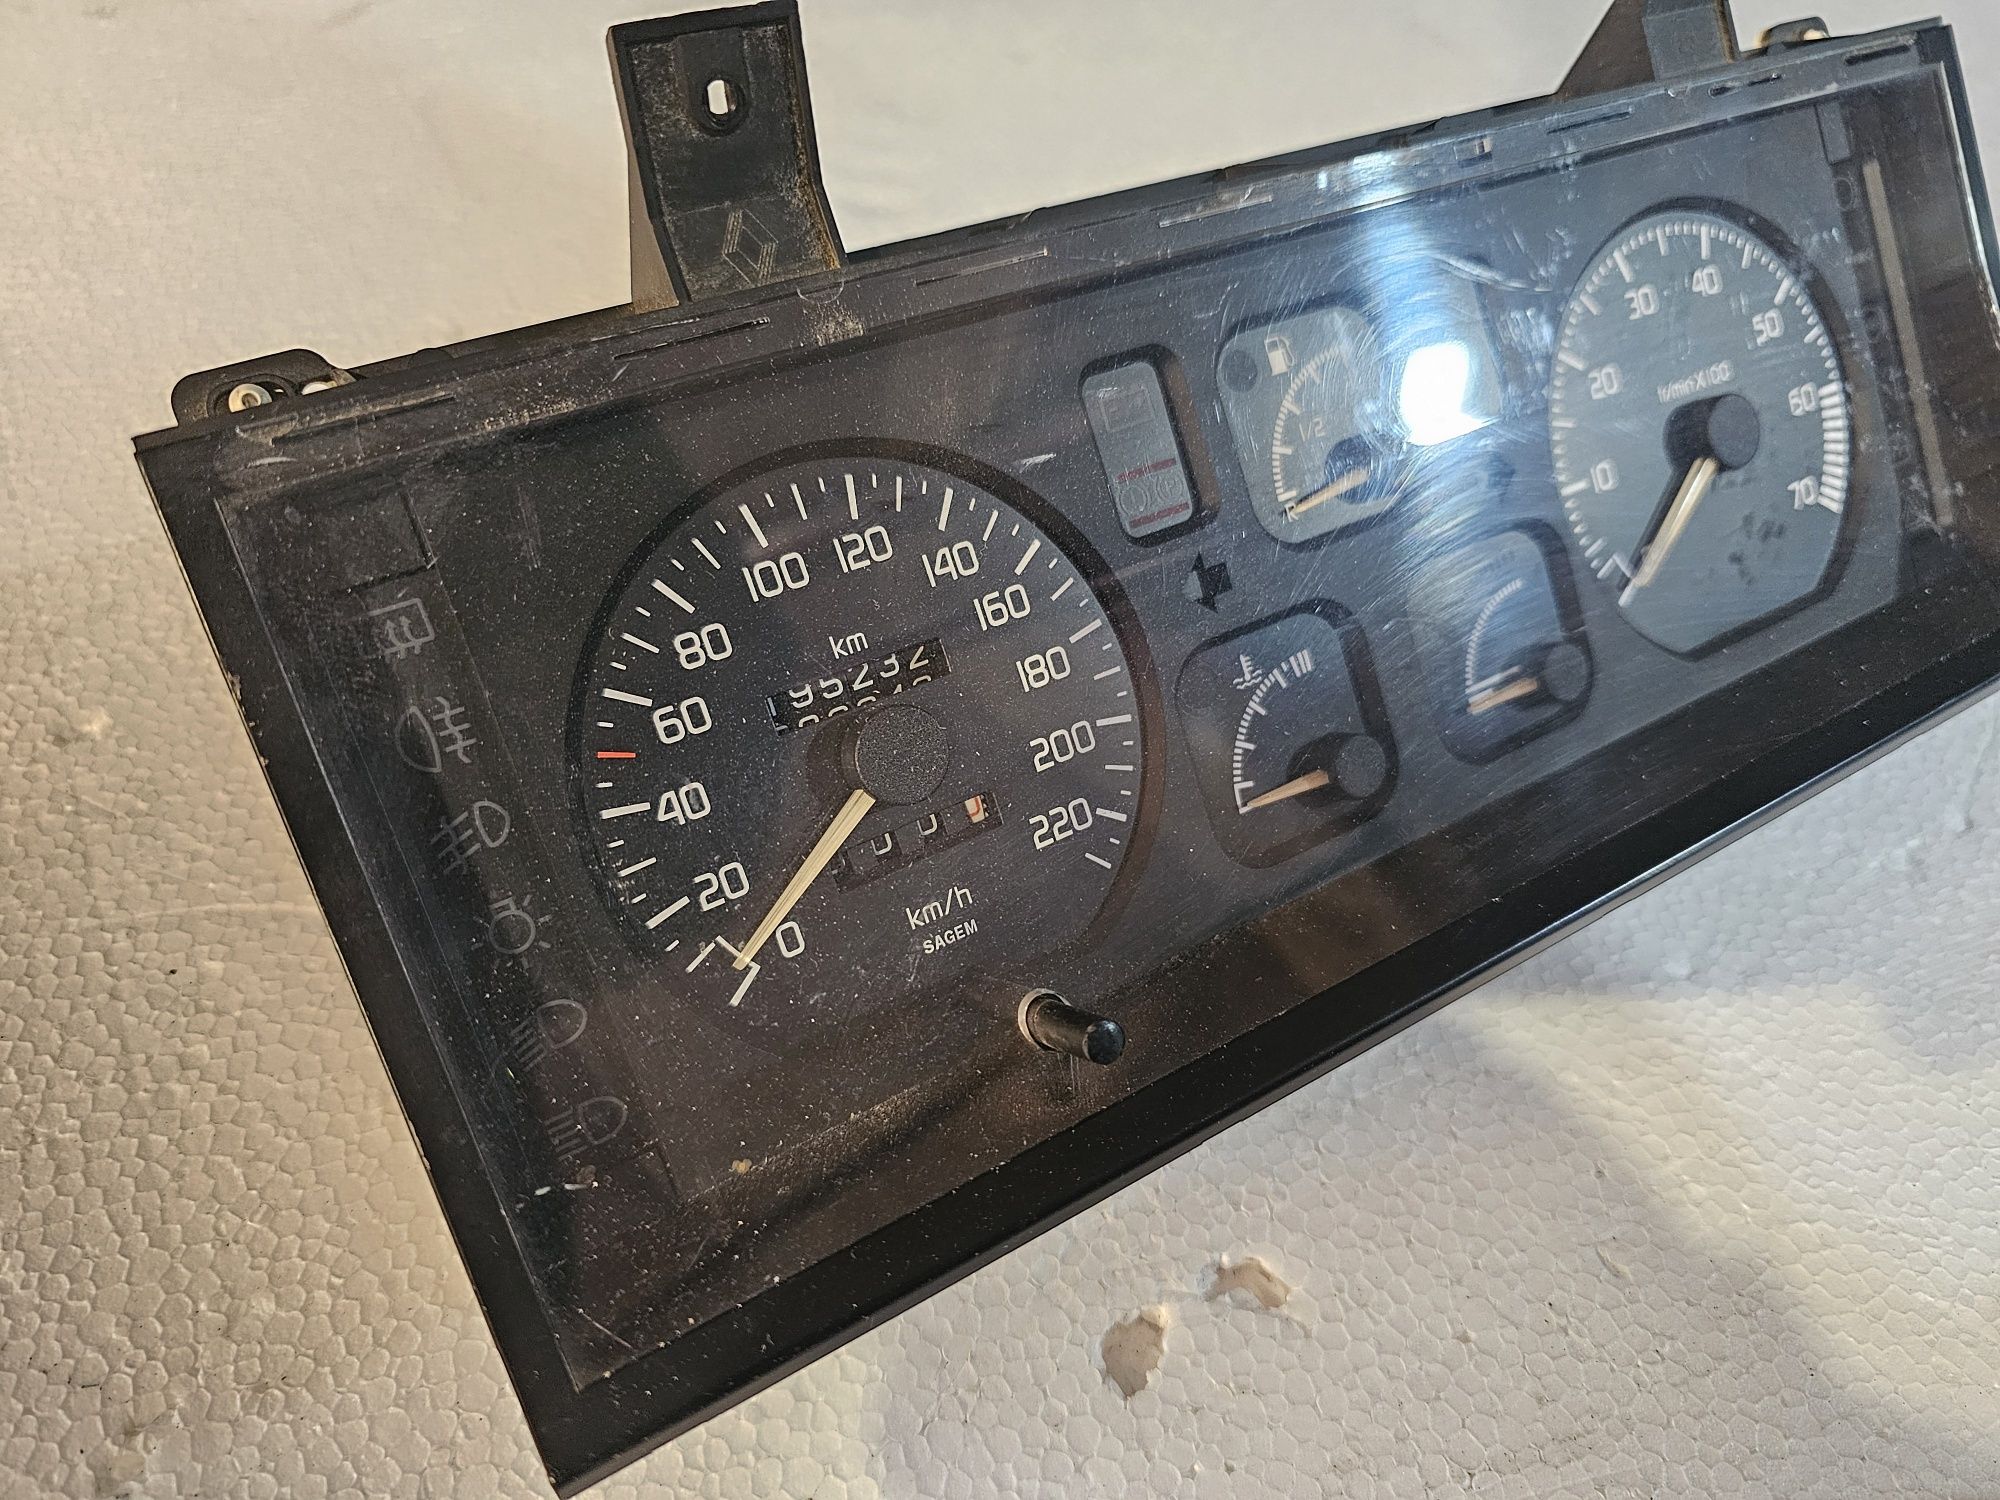 Ceasuri de bord Sagem originale Renault 19

Nu le cunosc starea. 
Se v